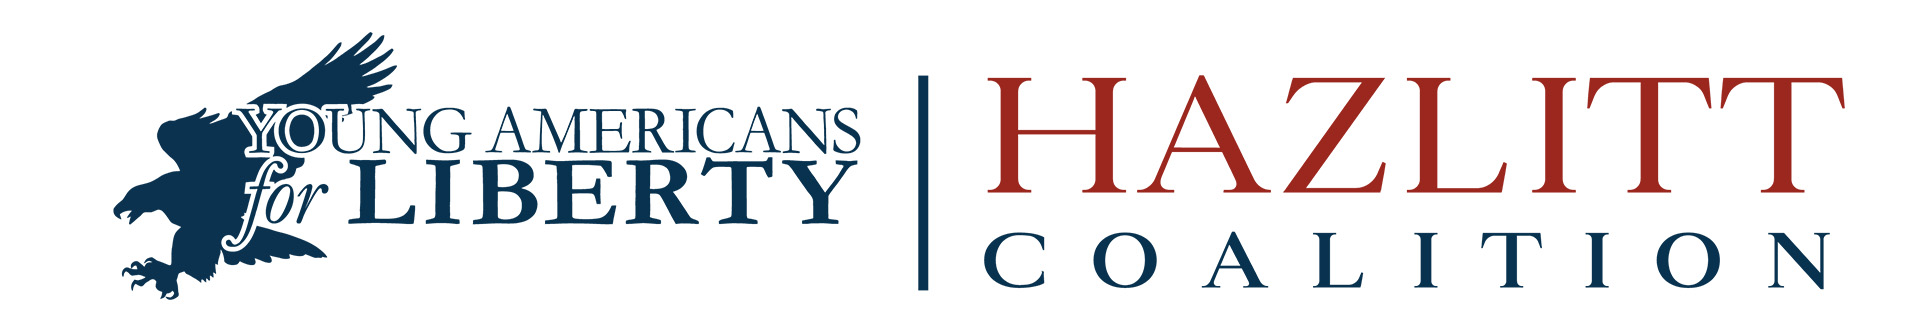 Hazlitt Coalition banner